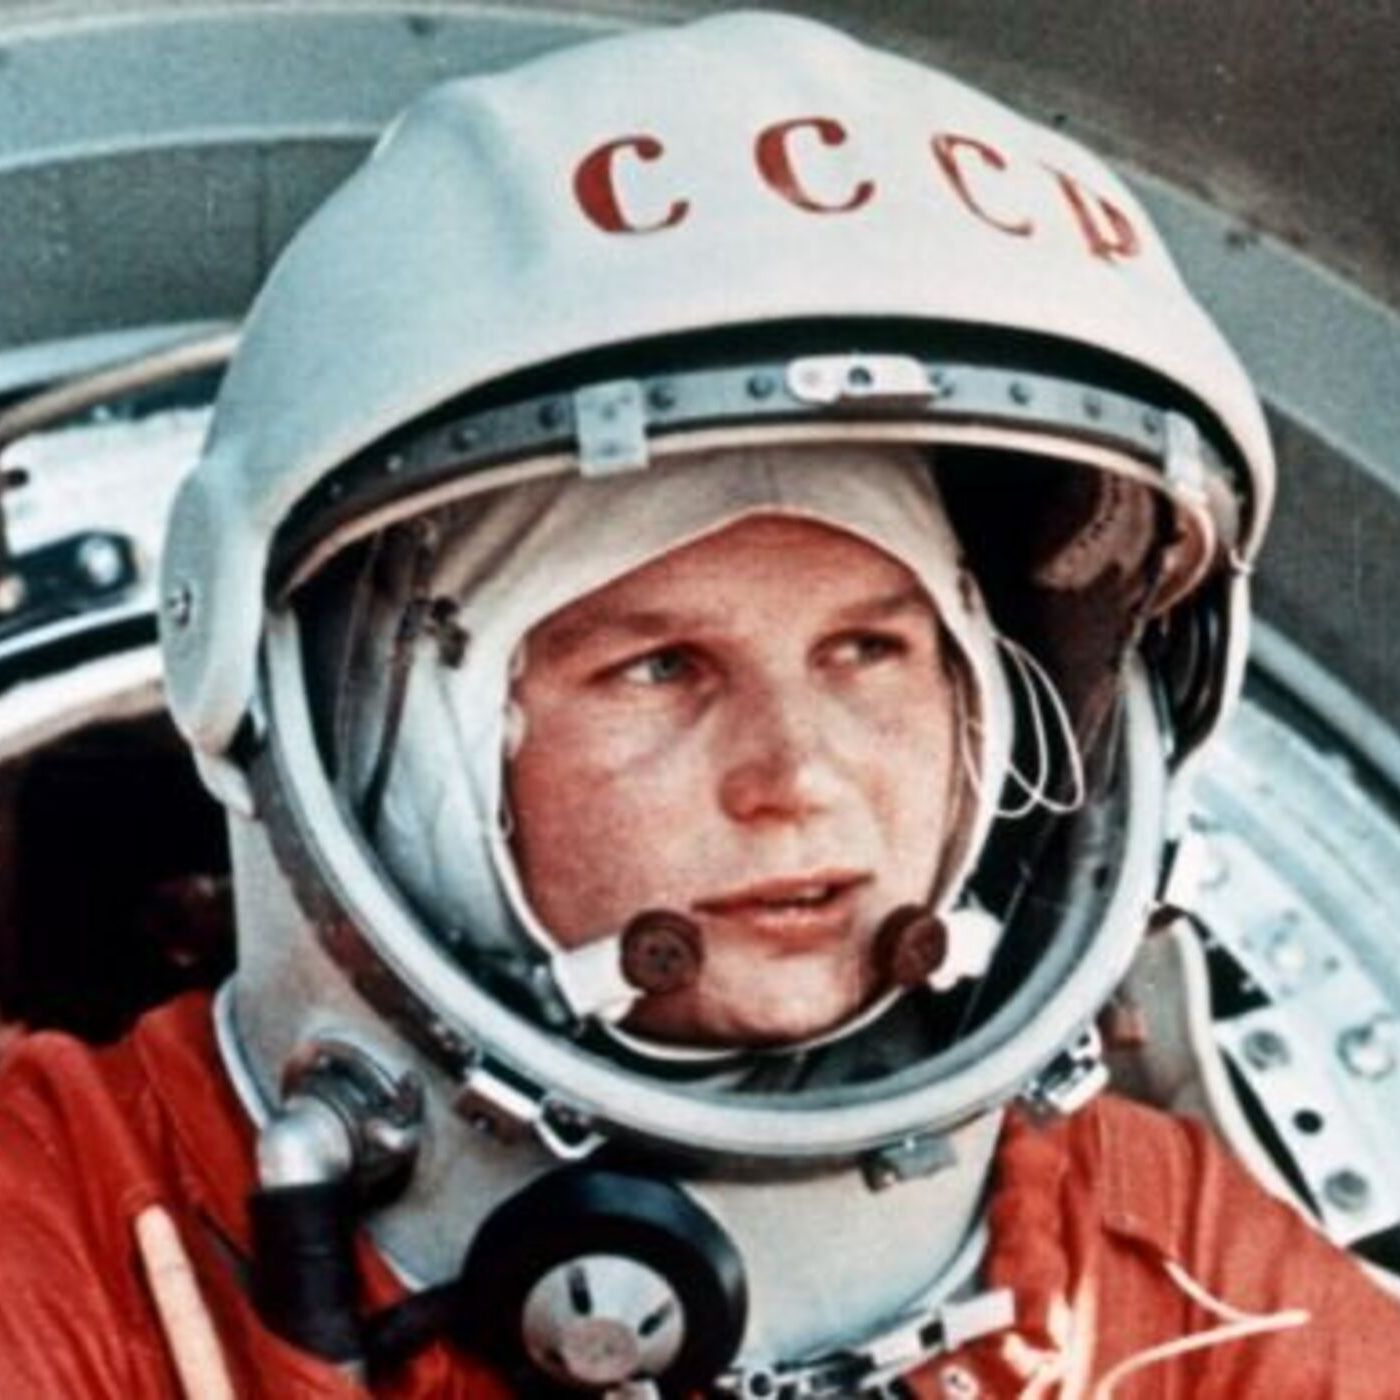 #292 - La prima donna nella spazio, solo propaganda? E gli USA?